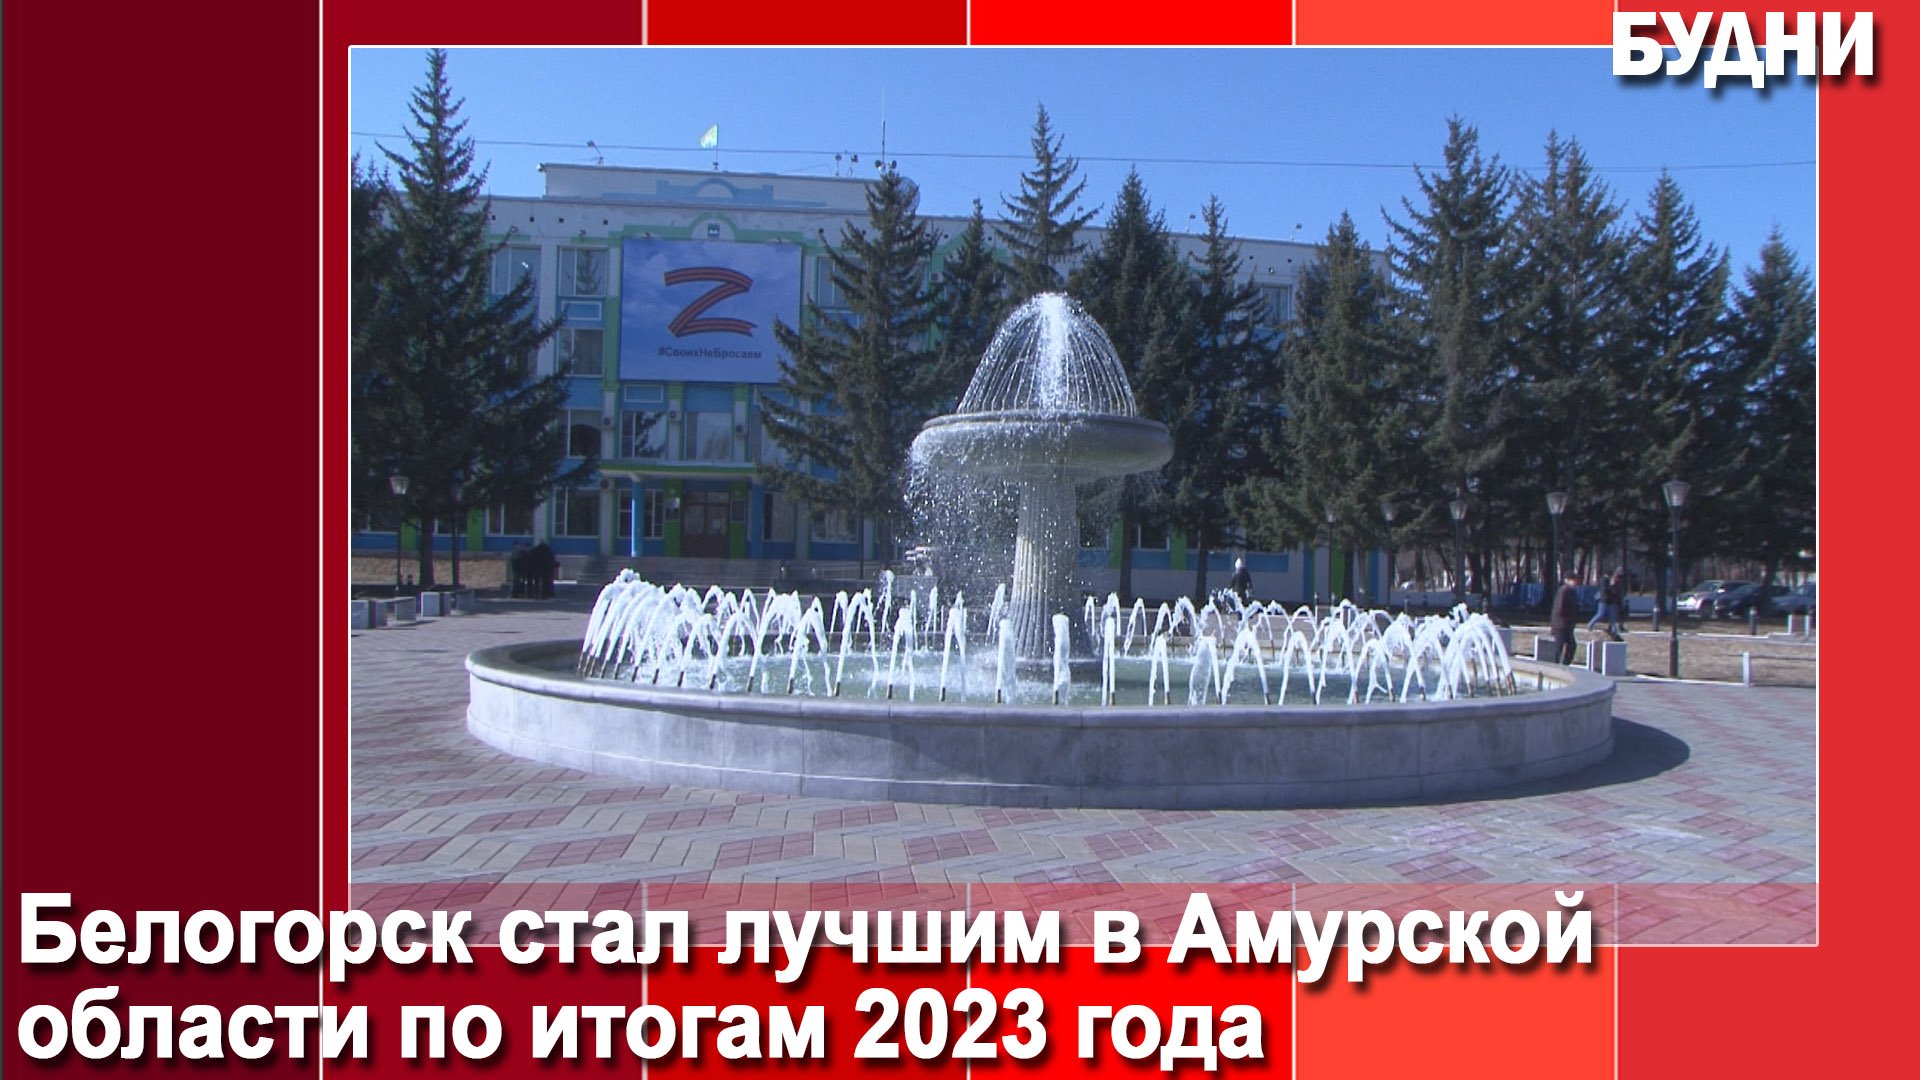 Белогорск стал лучшим в Приамурье по итогам 2023 года